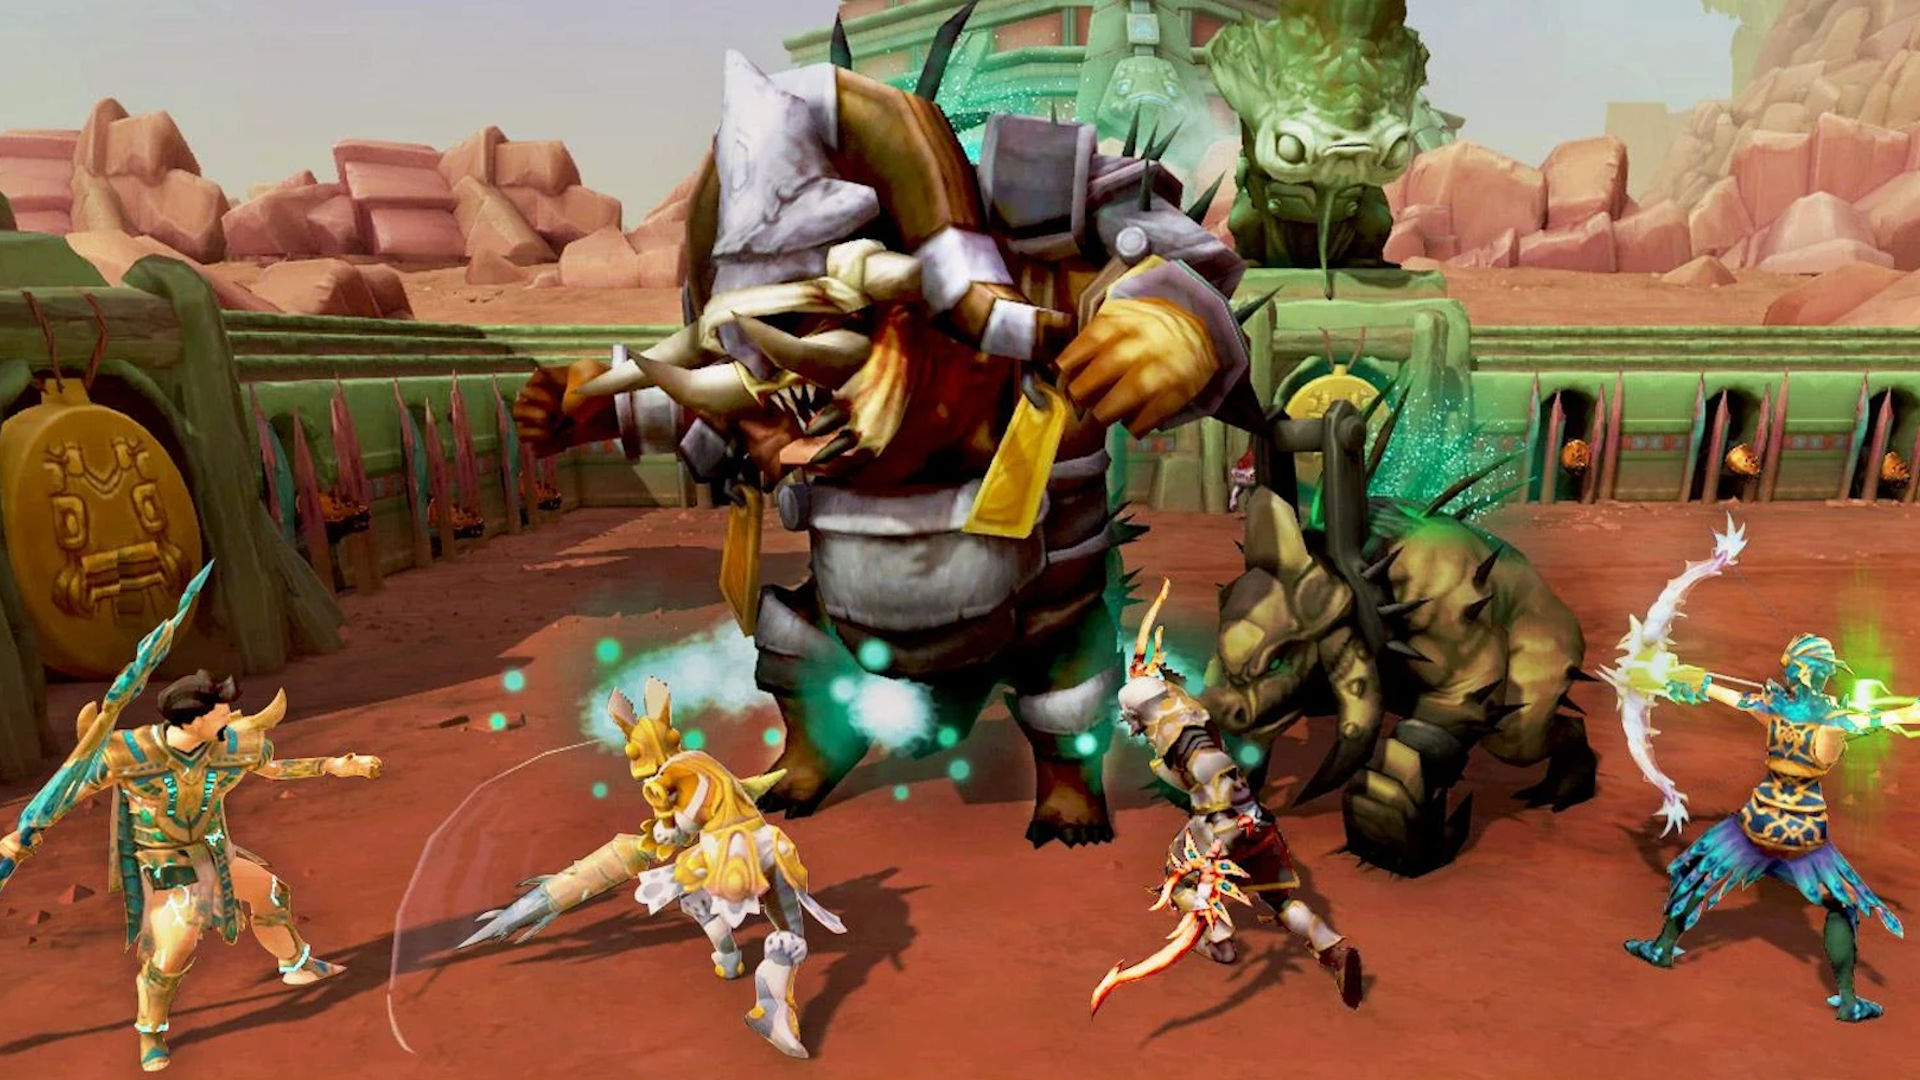 Mejores mmorpgs móviles: runeScape Mobile. La imagen muestra una parte de cuatro combatientes que luchan con una bestia gigante con forma de ogro